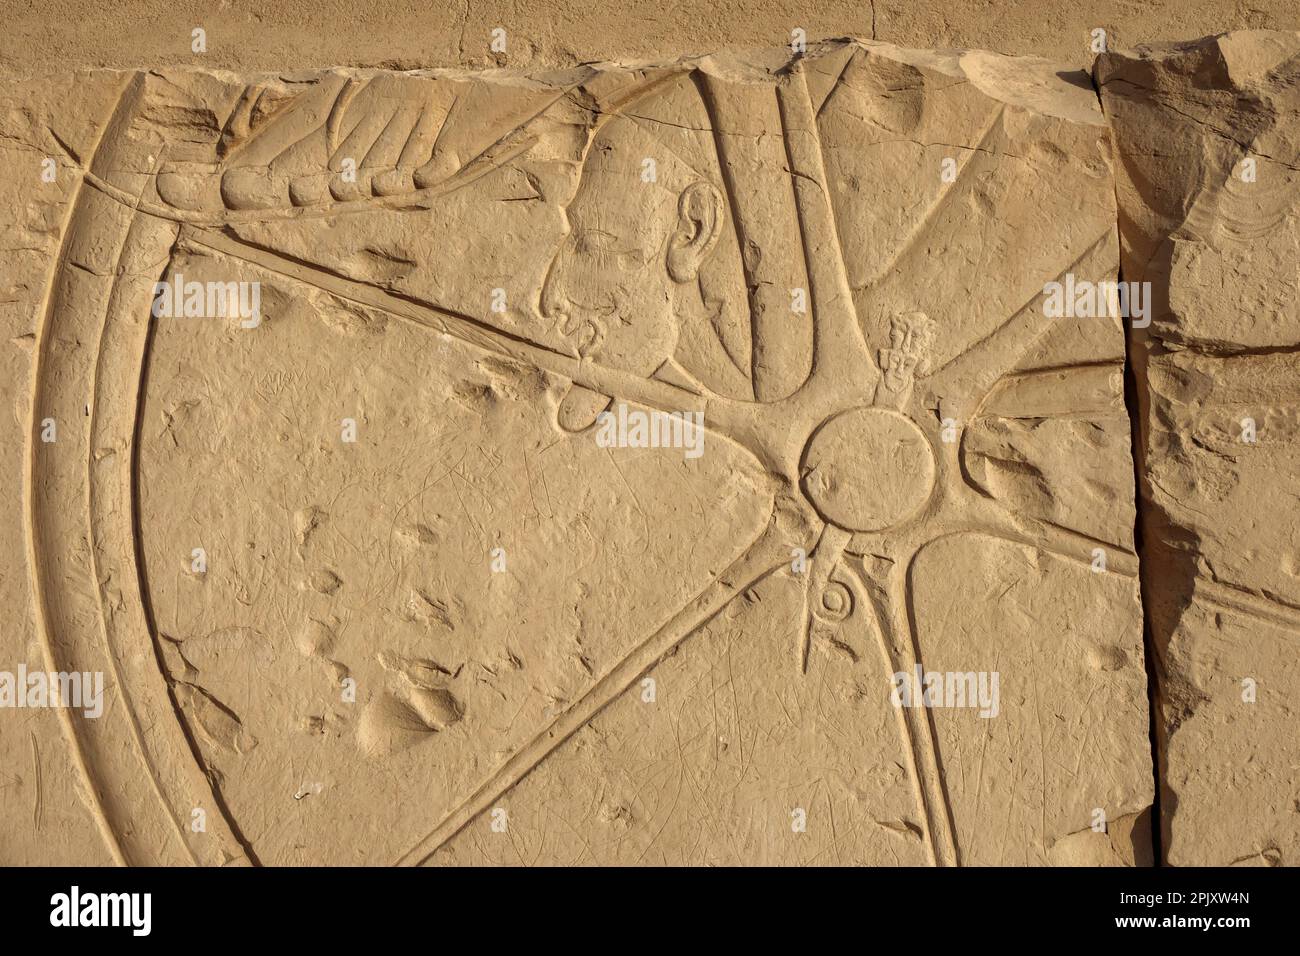 Détail de la roue de Chariot dans les scènes de bataille sur le parvis du Temple de Seti I, Abydos, Égypte Banque D'Images